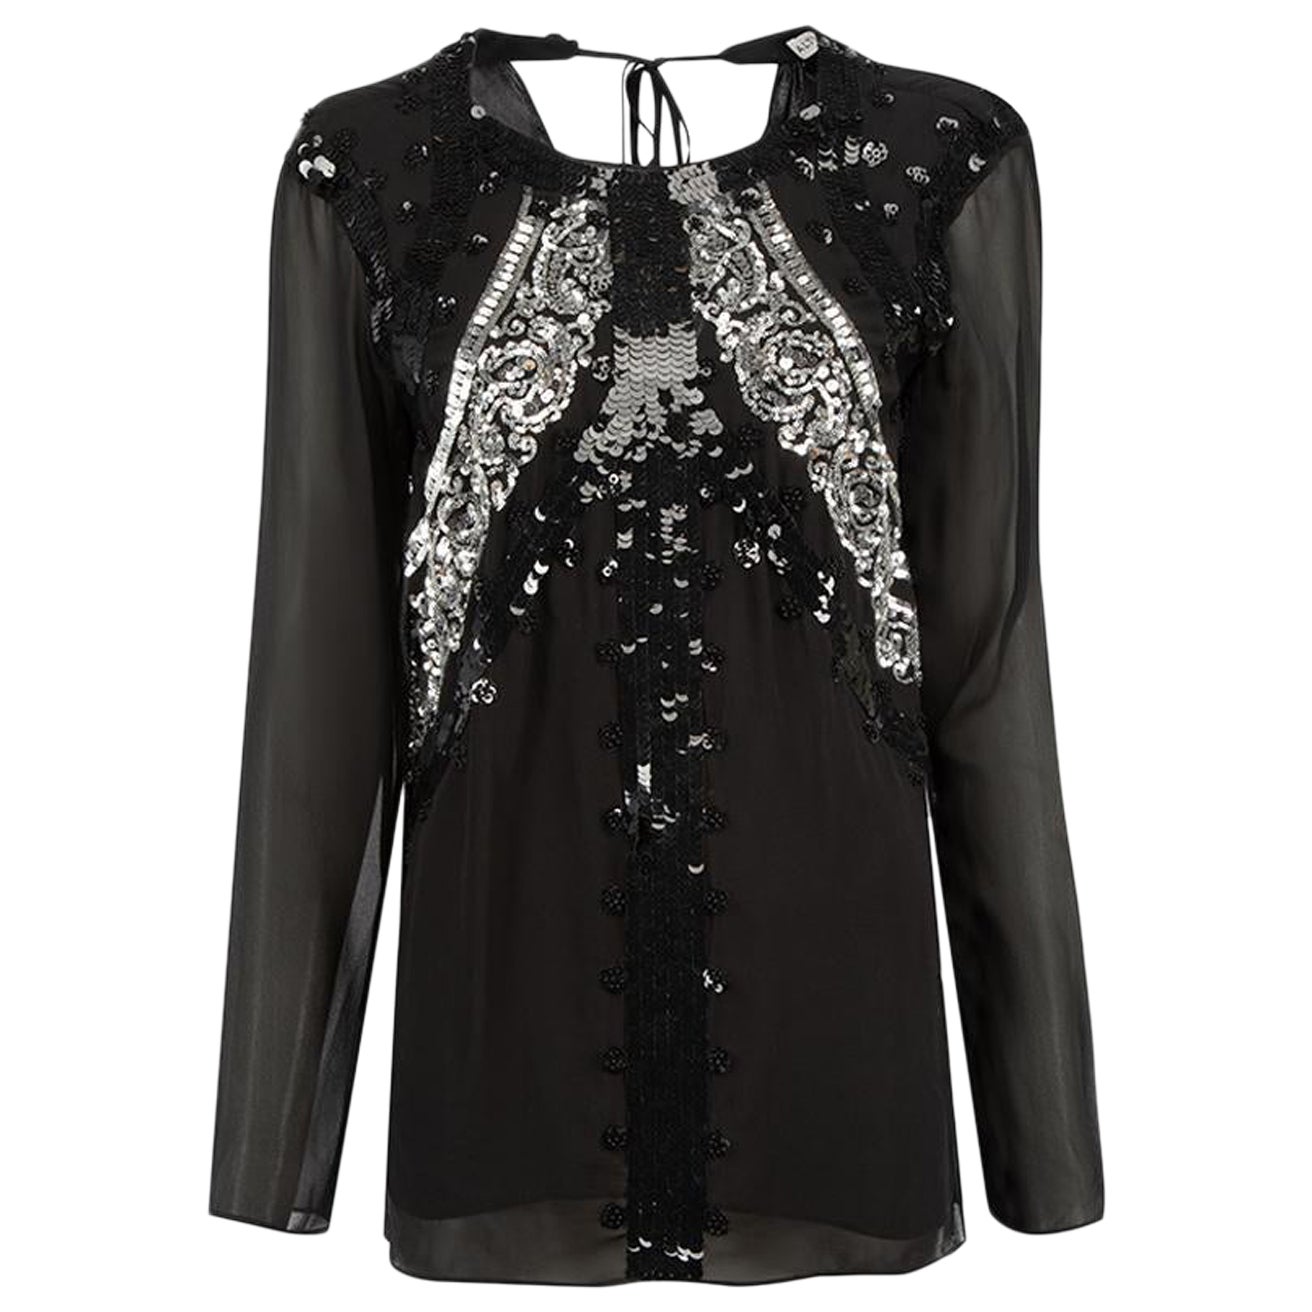 Altuzarra Black Silk Sequin Embellished Top Size M For Sale